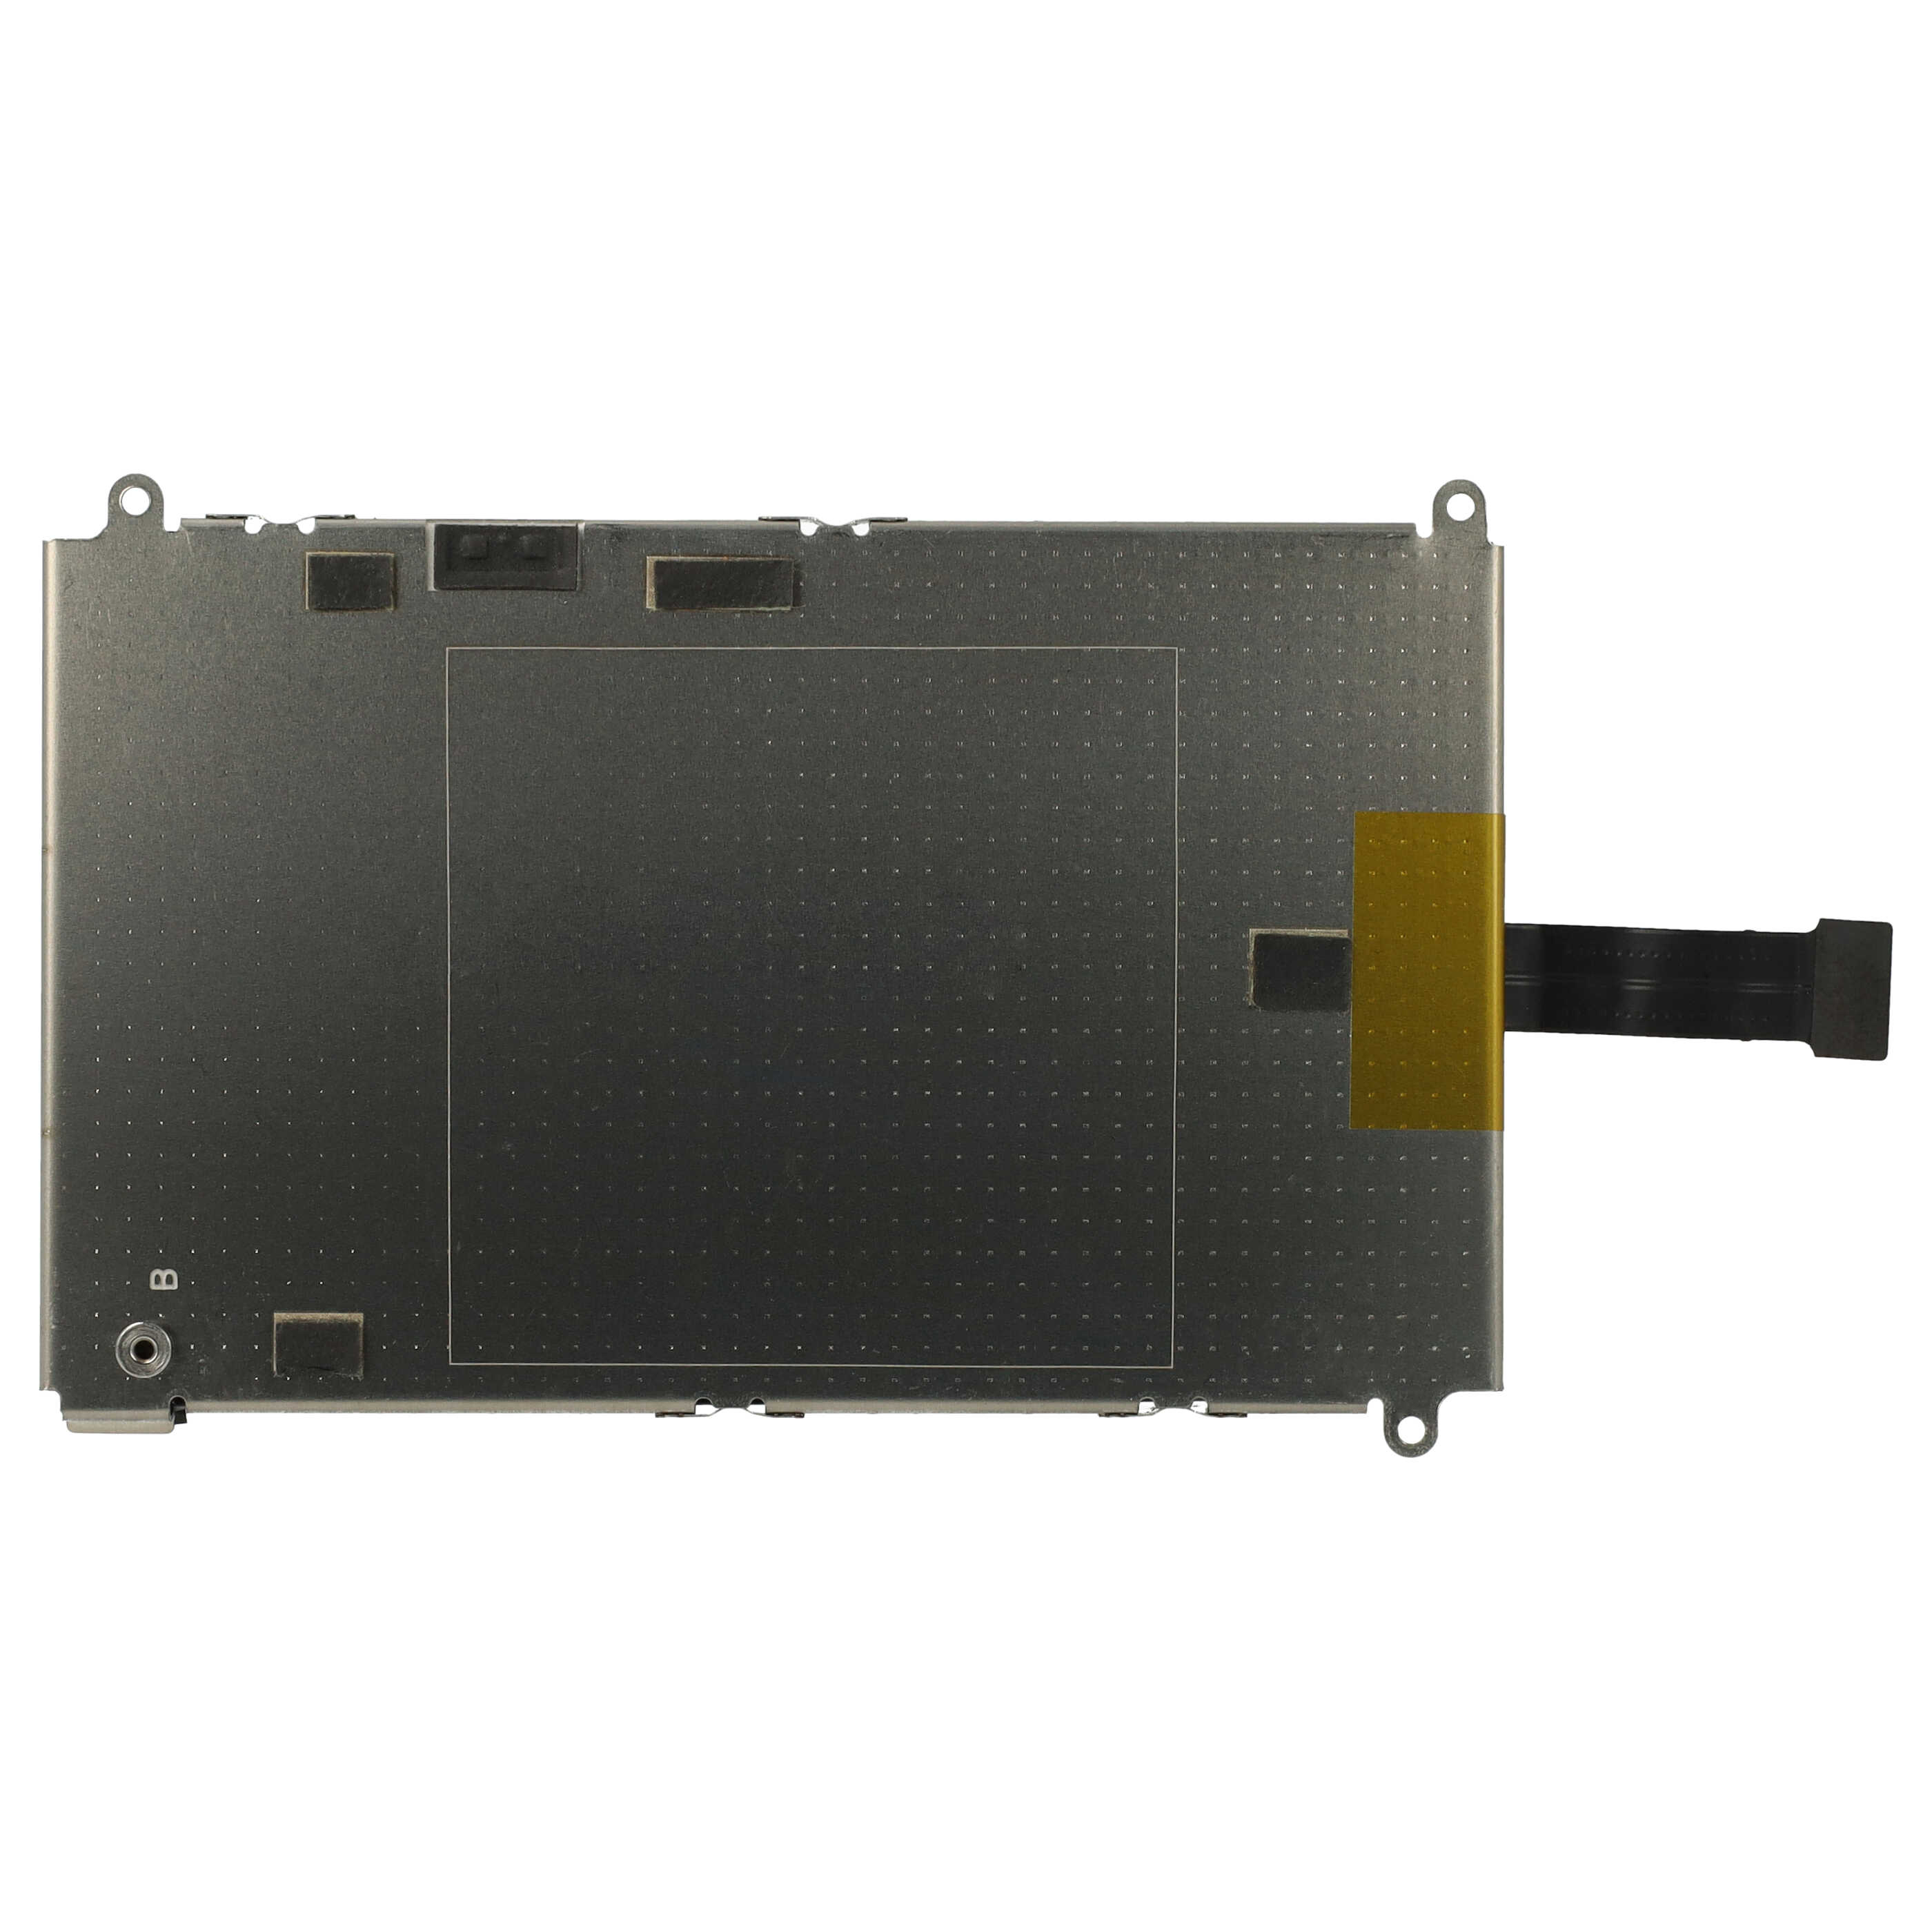 Batterie remplace GlocalMe G1611 pour routeur modem - 4400mAh 3,7V Li-polymère